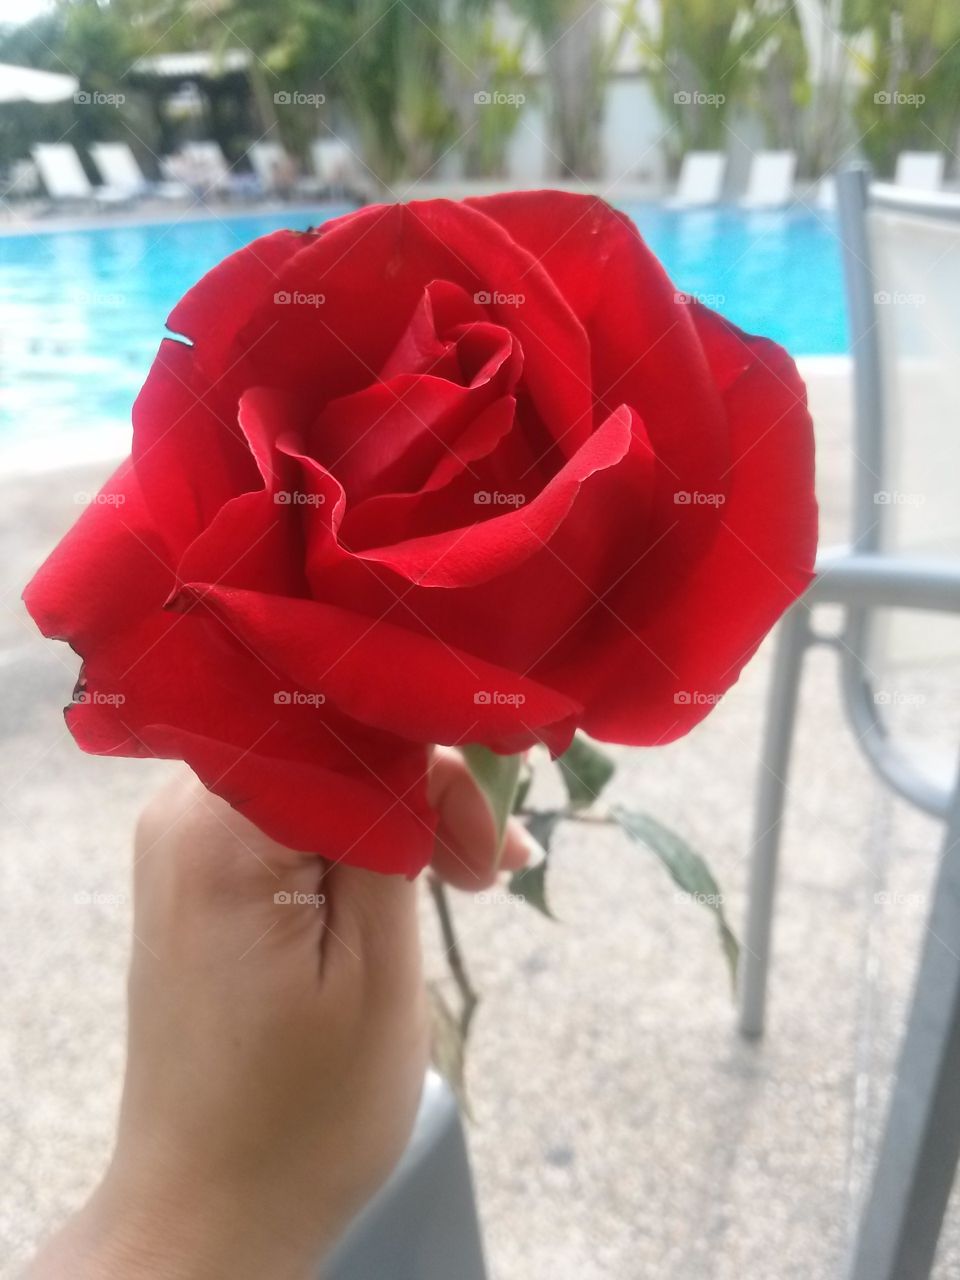 Rose/flower